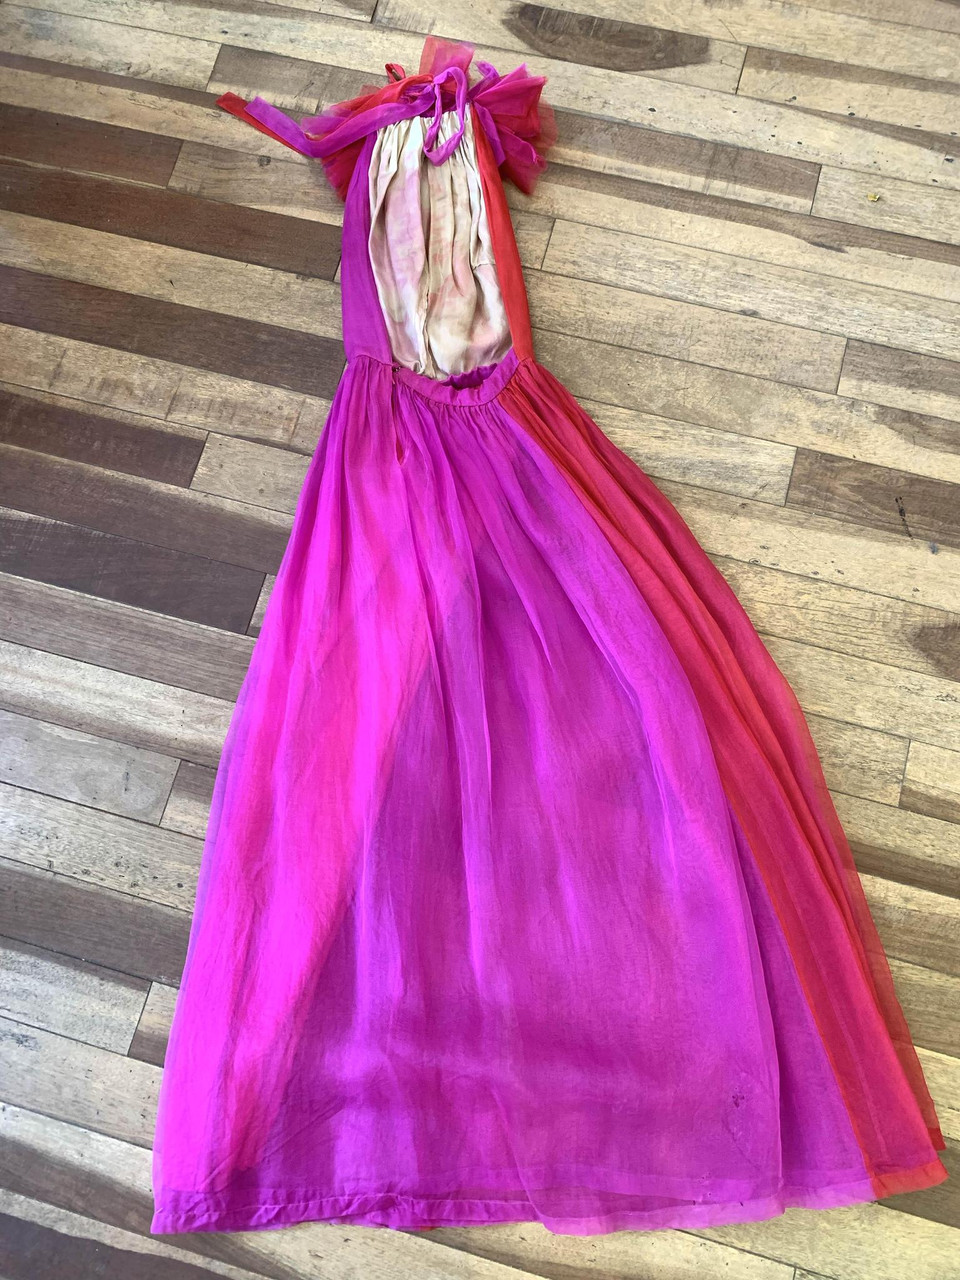 Pink/Orange Collared Color Blocking Dress